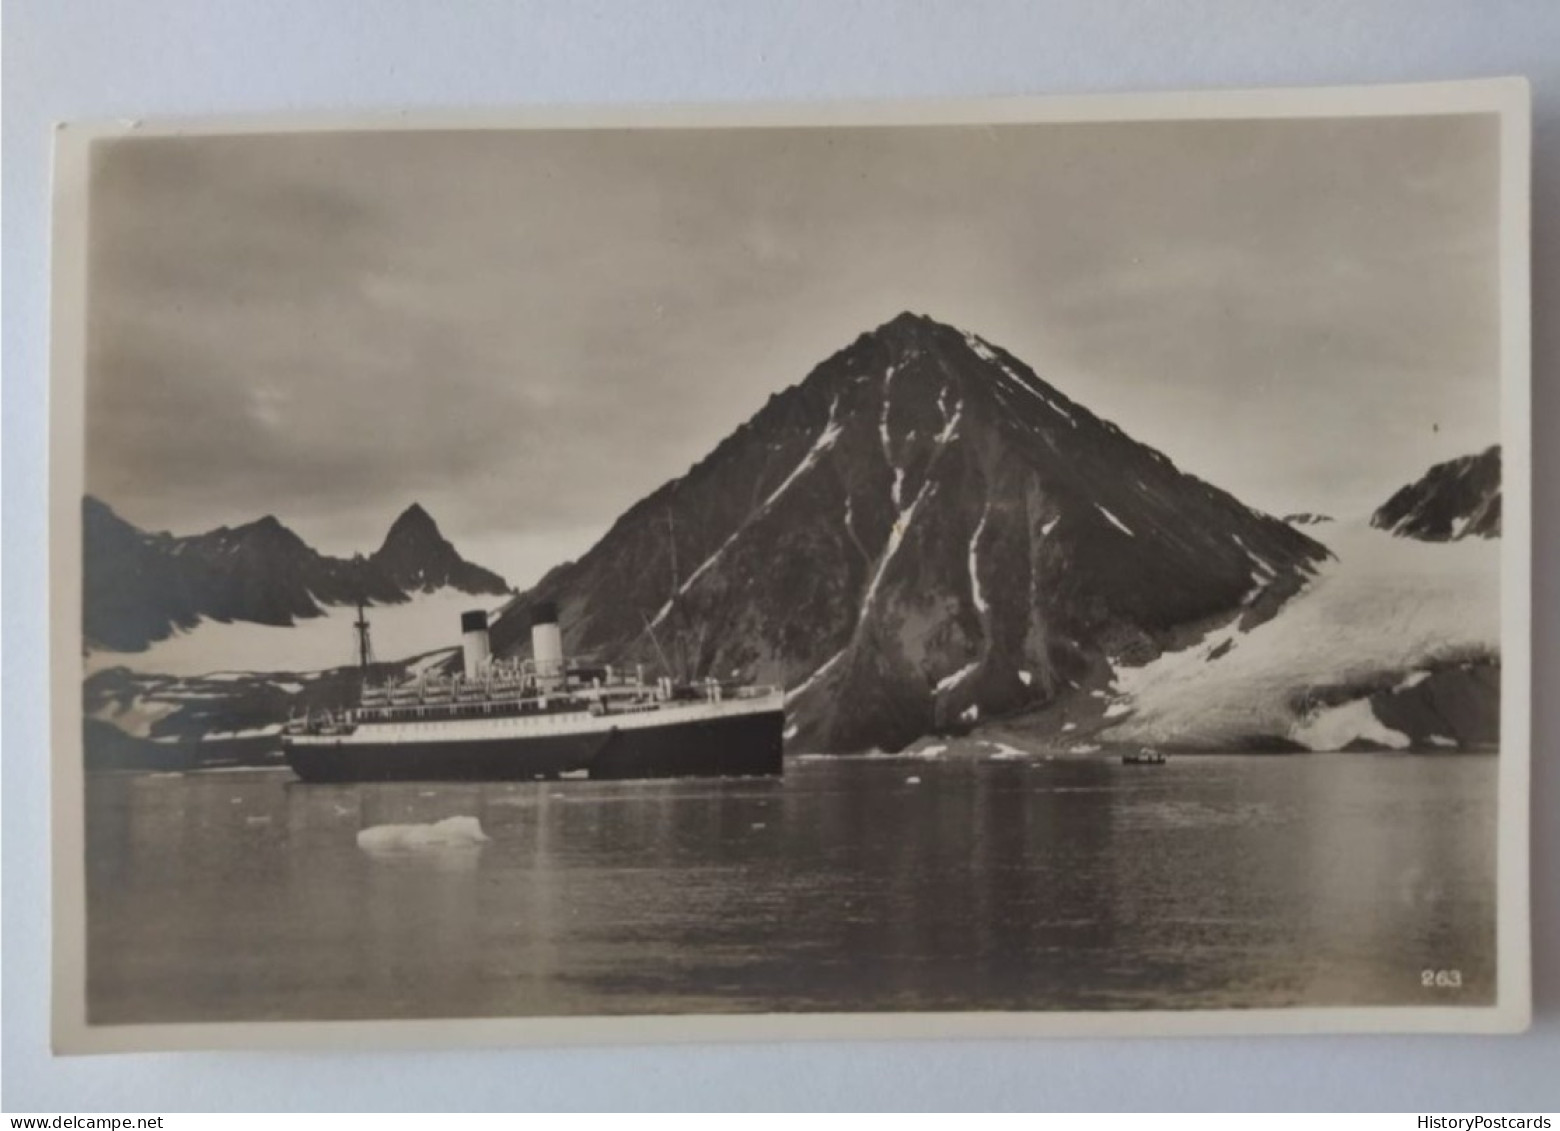 Svalbard, Spitzbergen, In Den Eisfjorden, Passagierdampfer, Schiff, 1930 - Norvège